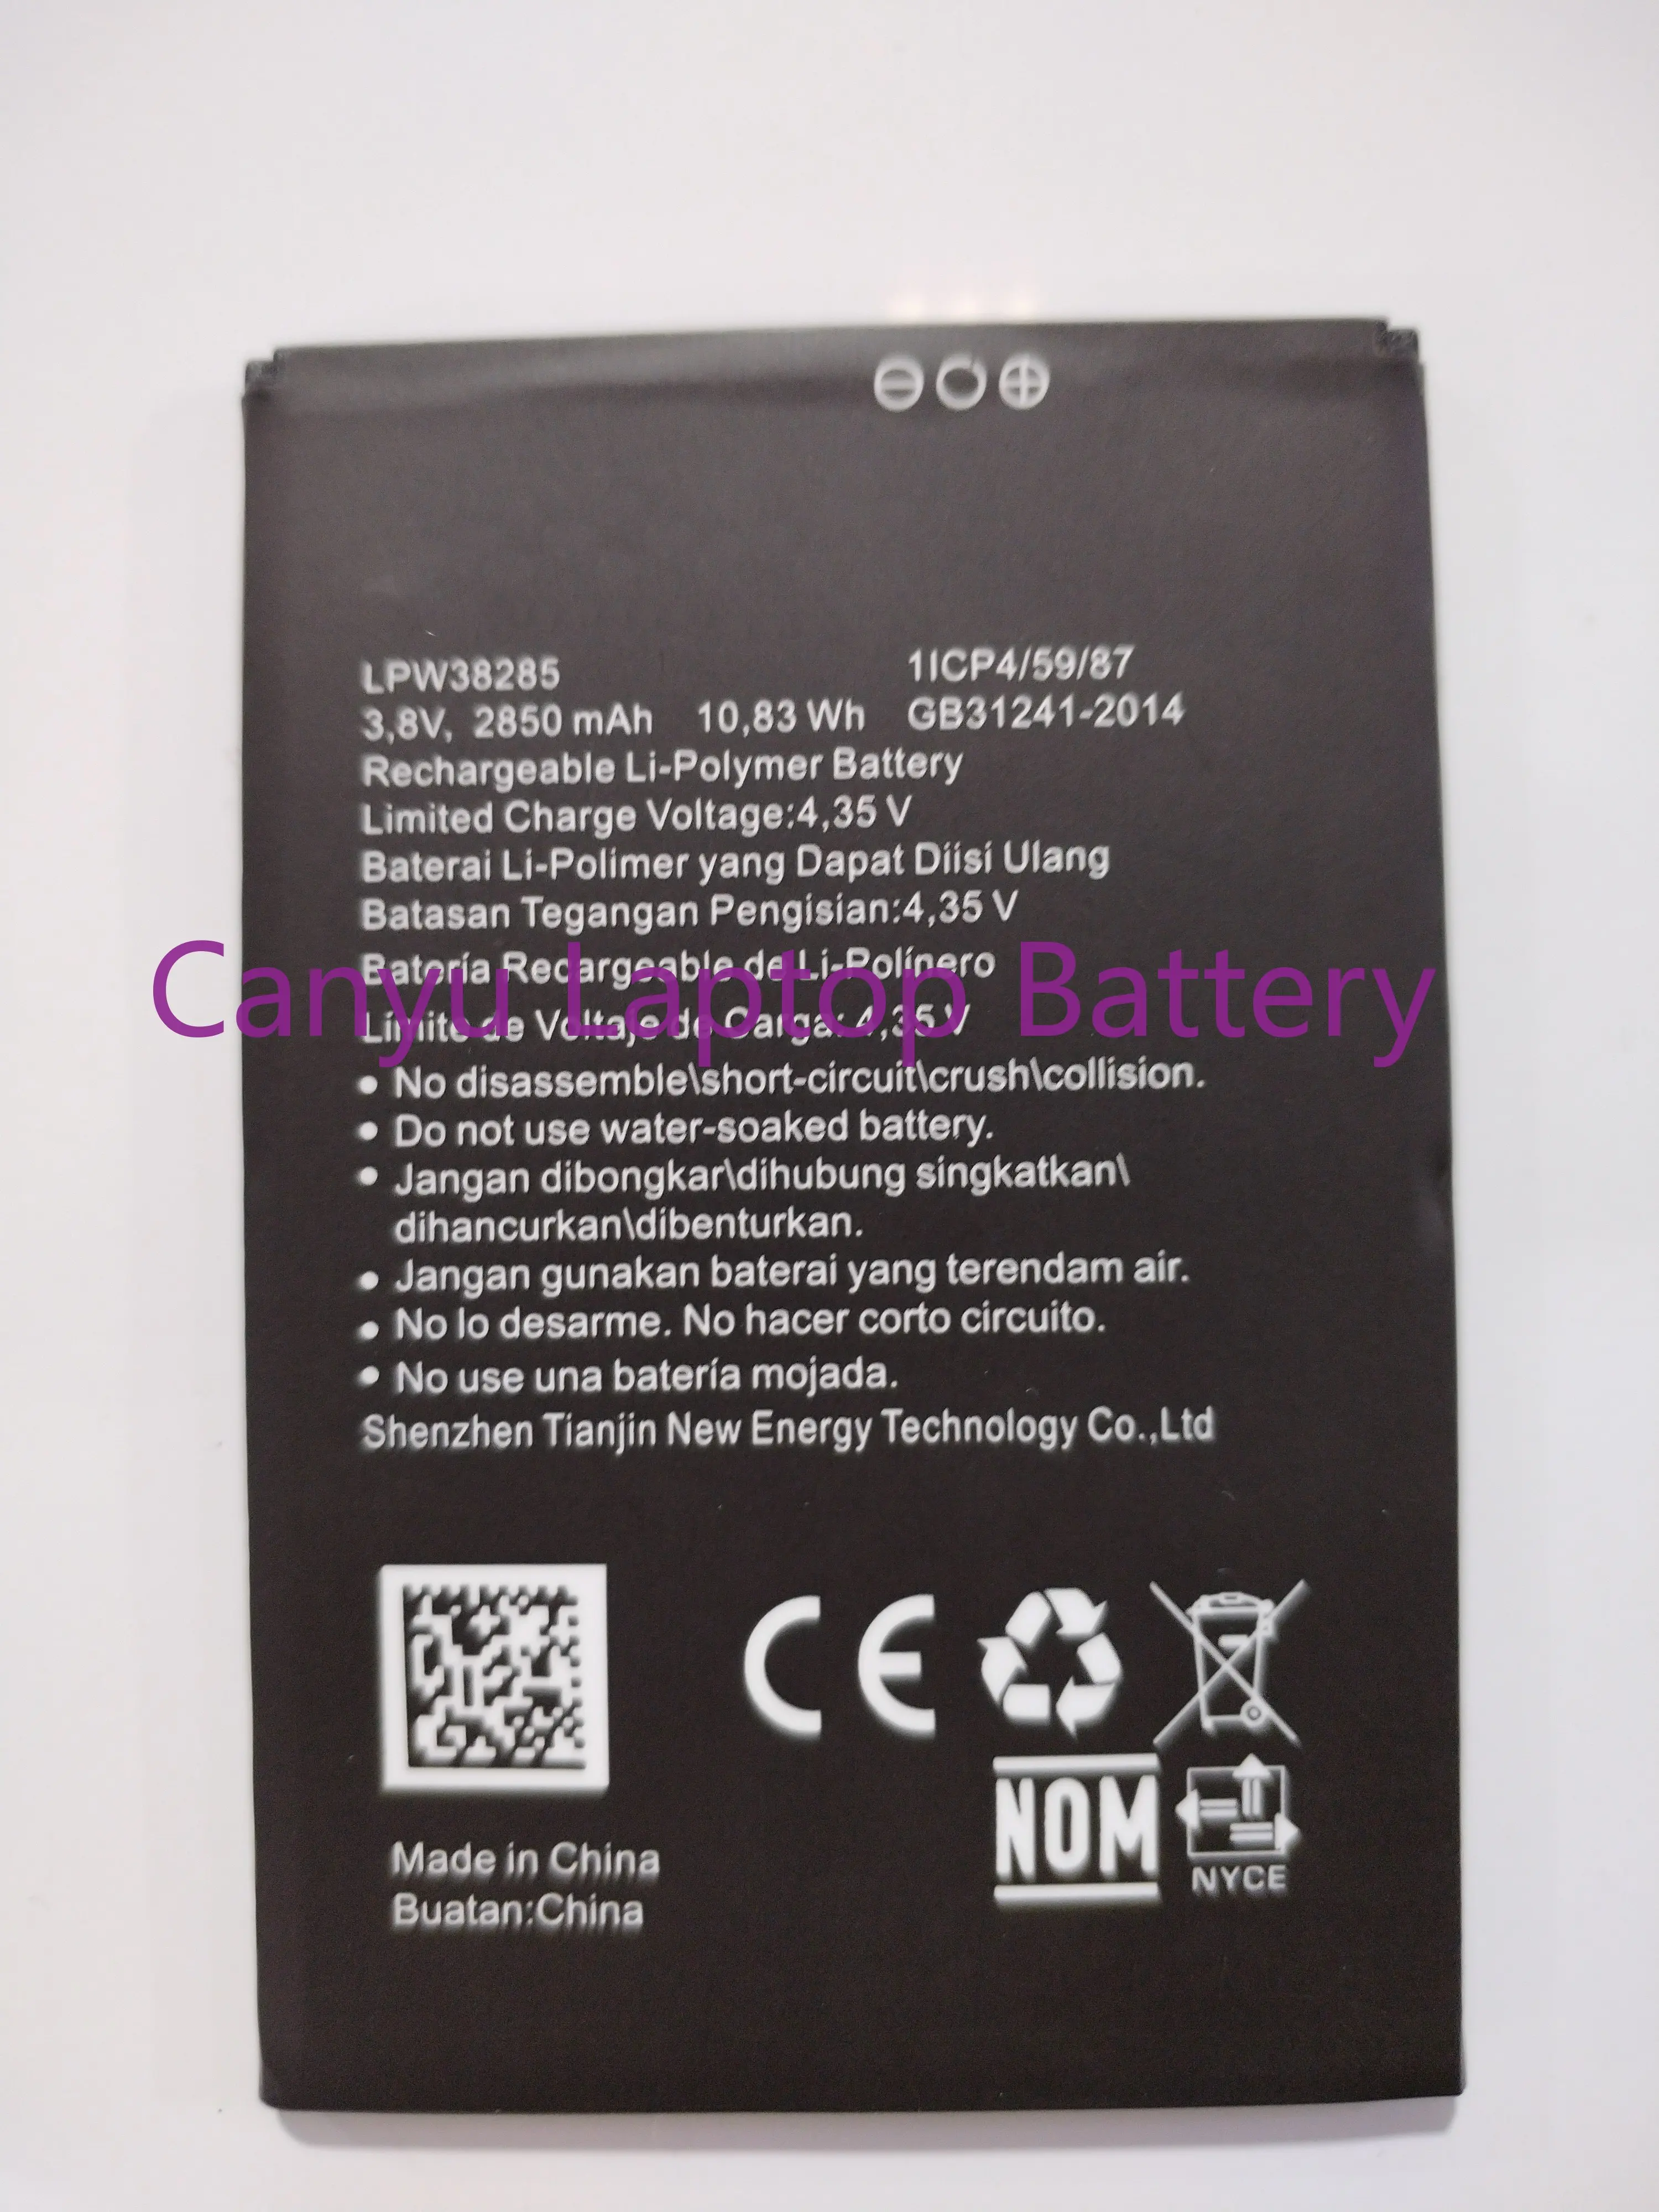 

Новая батарея для смартфона Hisense LPW38285 2850mAh